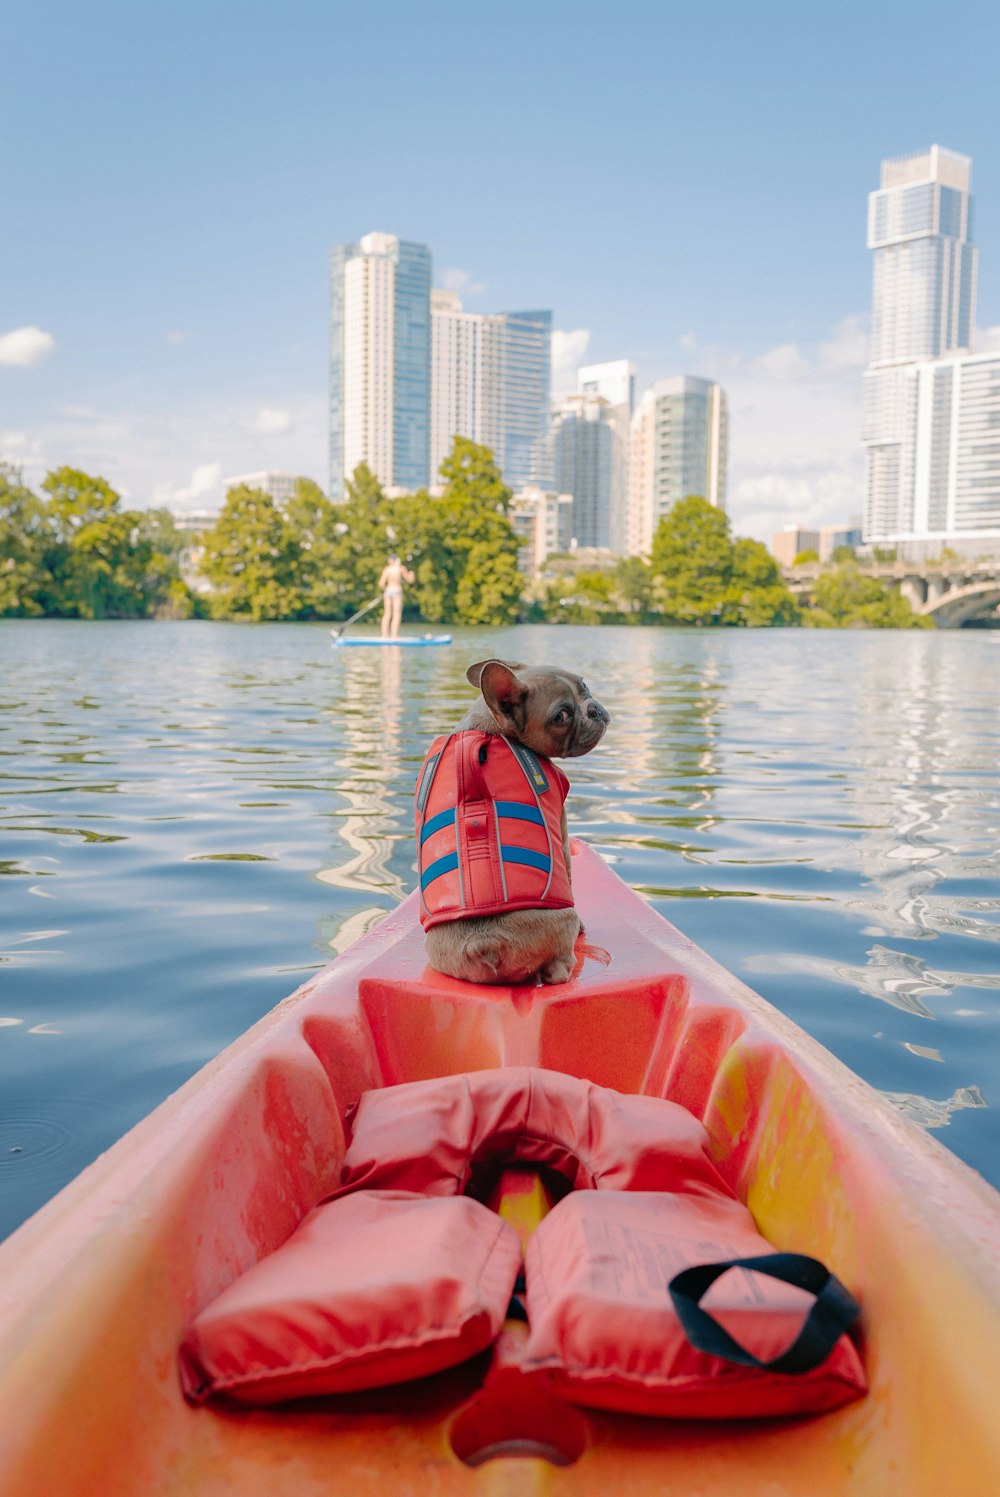 brown short coated dog on orange kayak on body of water during daytime